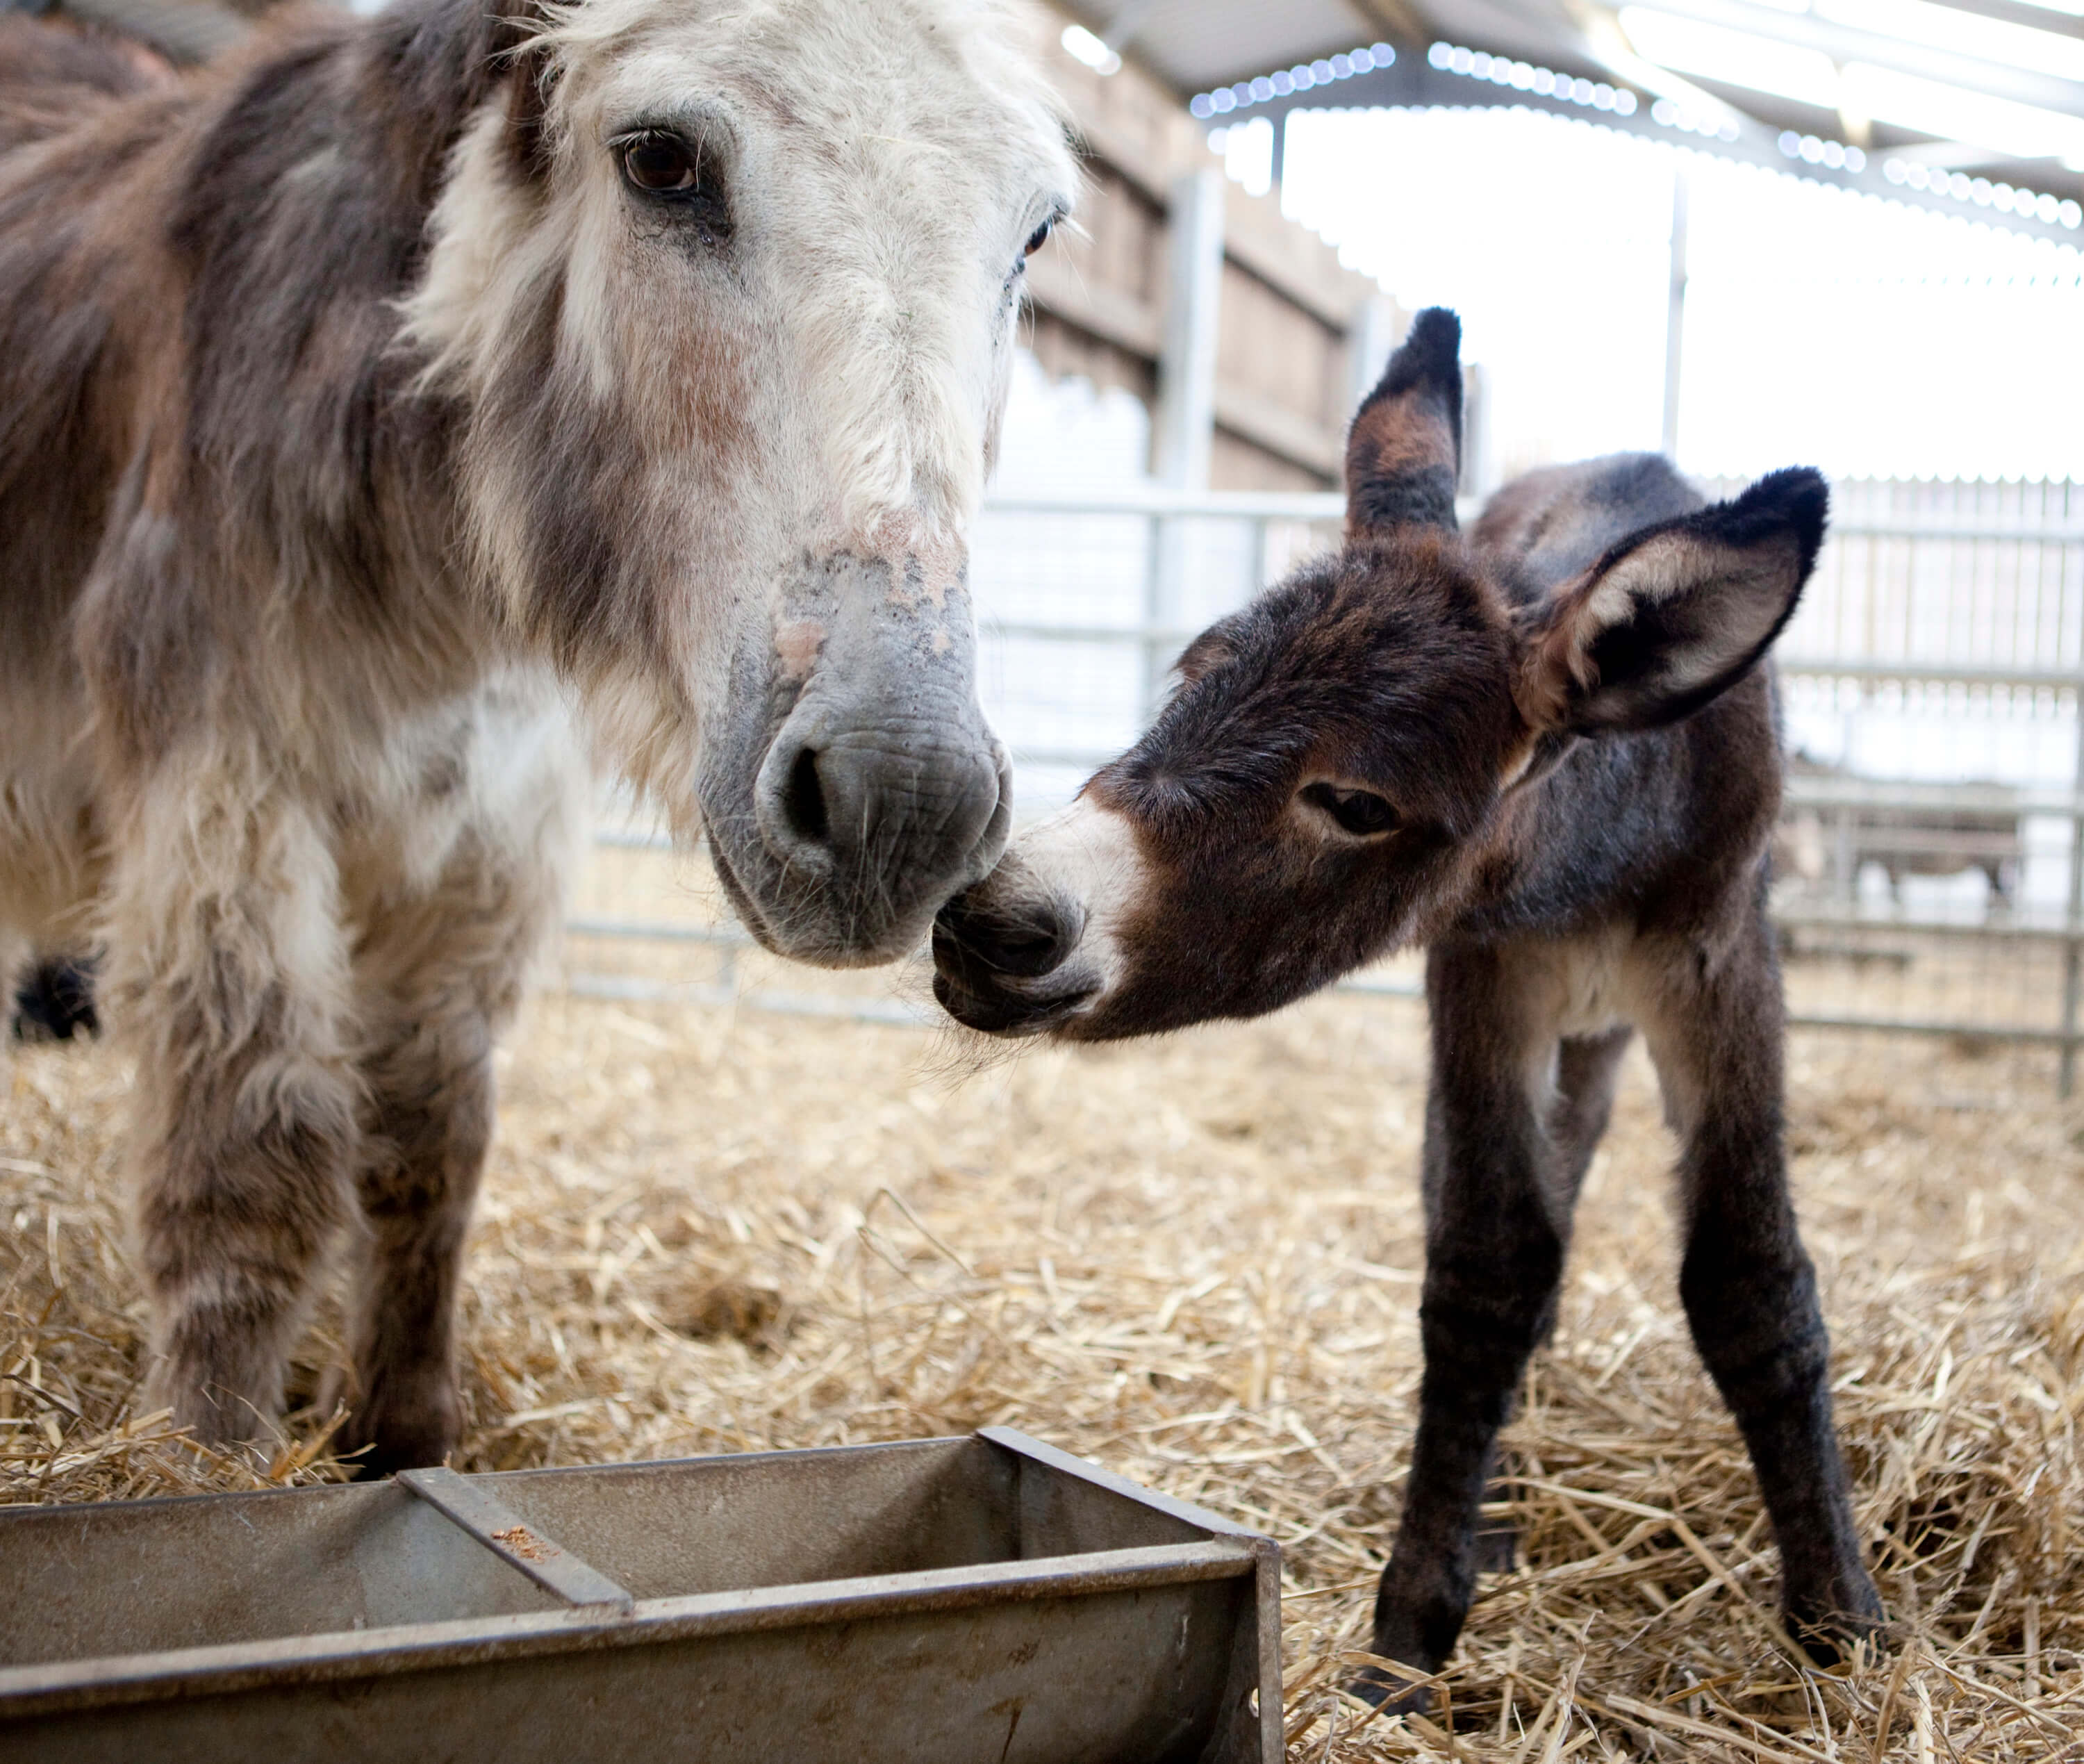 adopt a donkey from Folly Farm